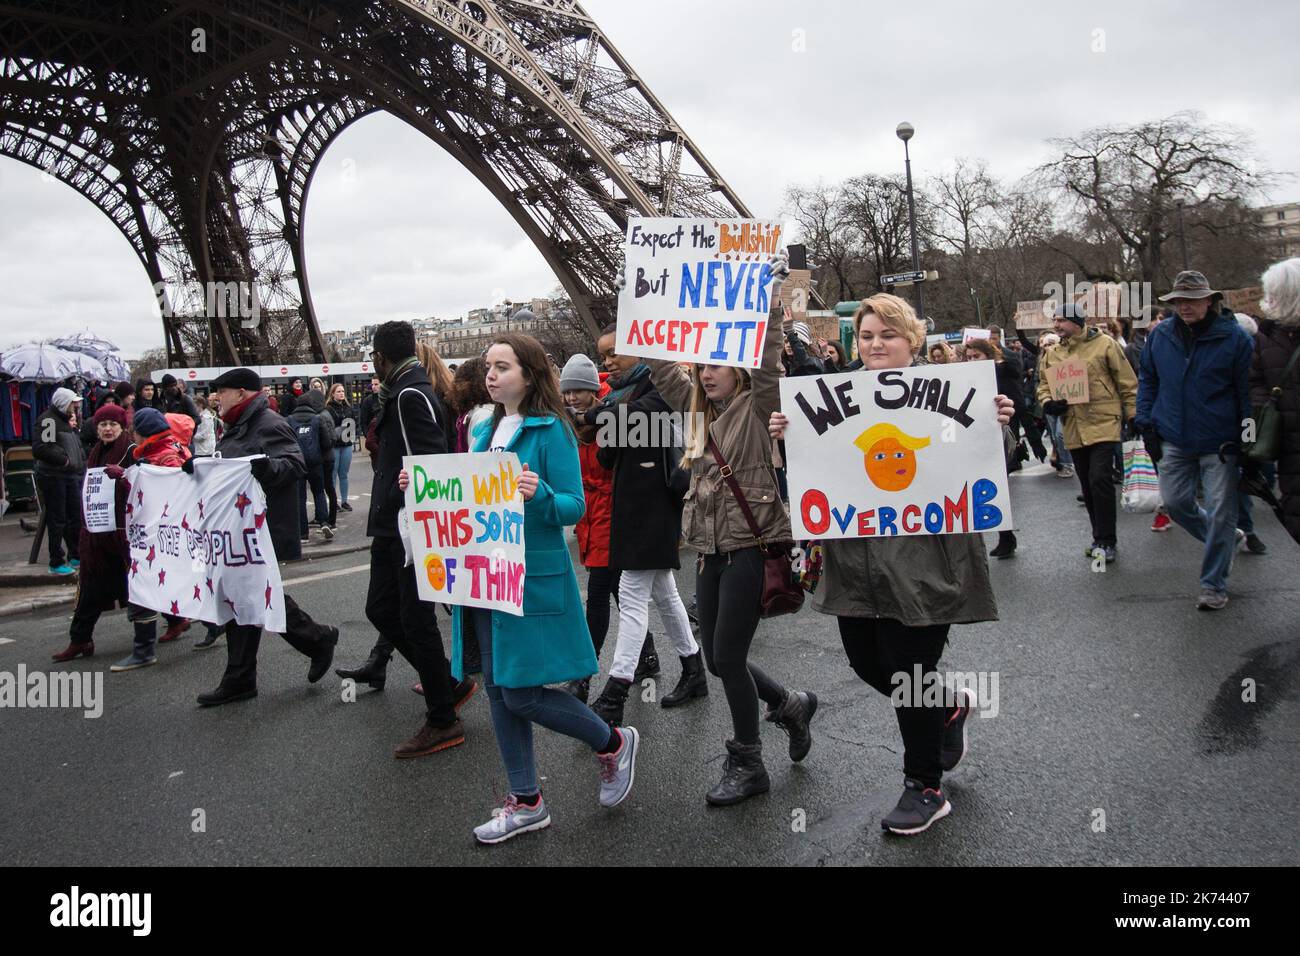 Circa un migliaio di persone hanno manifestato a Parigi contro il decreto anti-immigrazione del presidente americano Donald Trump (Muslim Ban), Place du Trocadero, sabato 4 febbraio 2017. Foto Stock